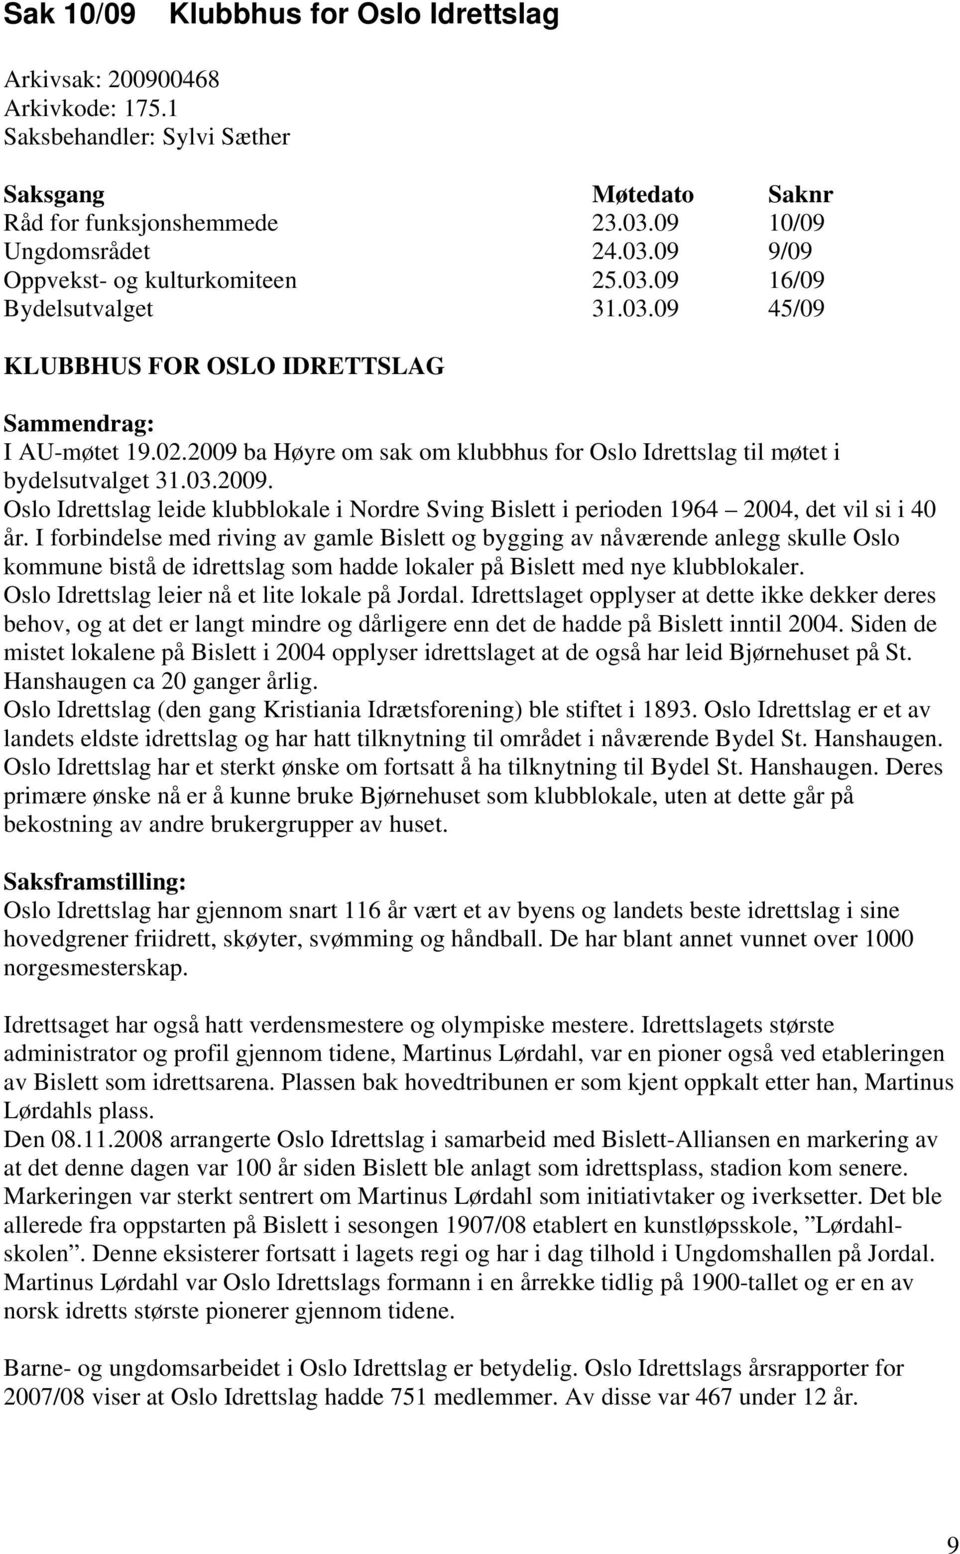 ba Høyre om sak om klubbhus for Oslo Idrettslag til møtet i bydelsutvalget 31.03.2009. Oslo Idrettslag leide klubblokale i Nordre Sving Bislett i perioden 1964 2004, det vil si i 40 år.